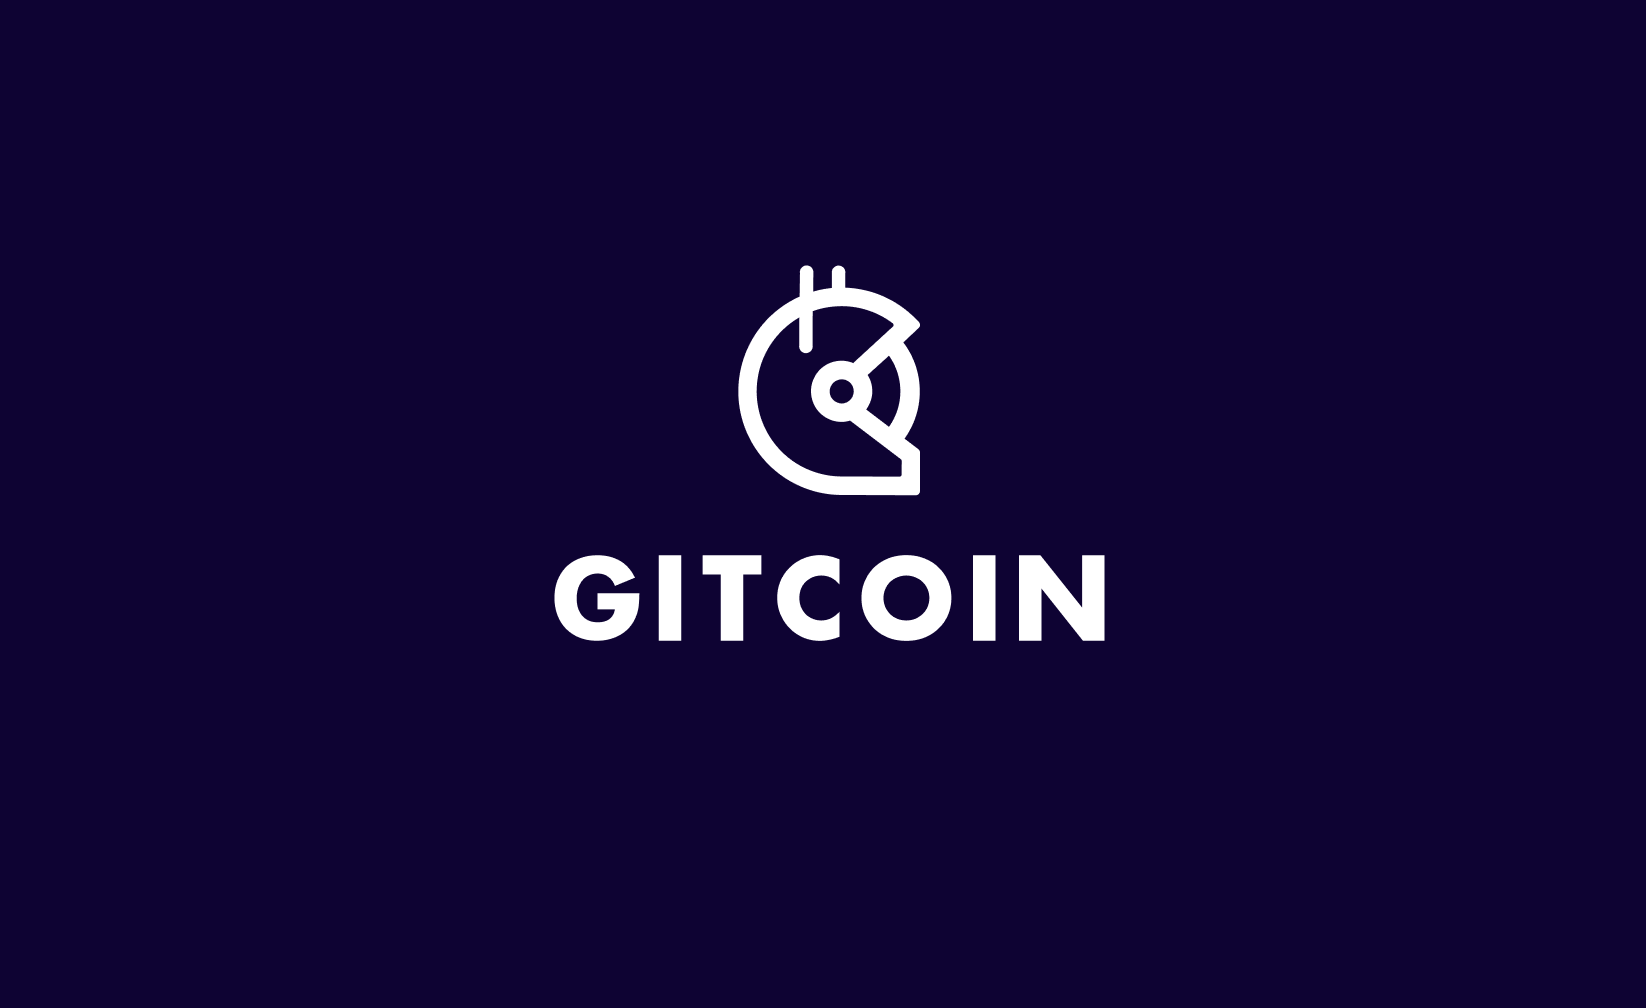 Gitcoin price prediction